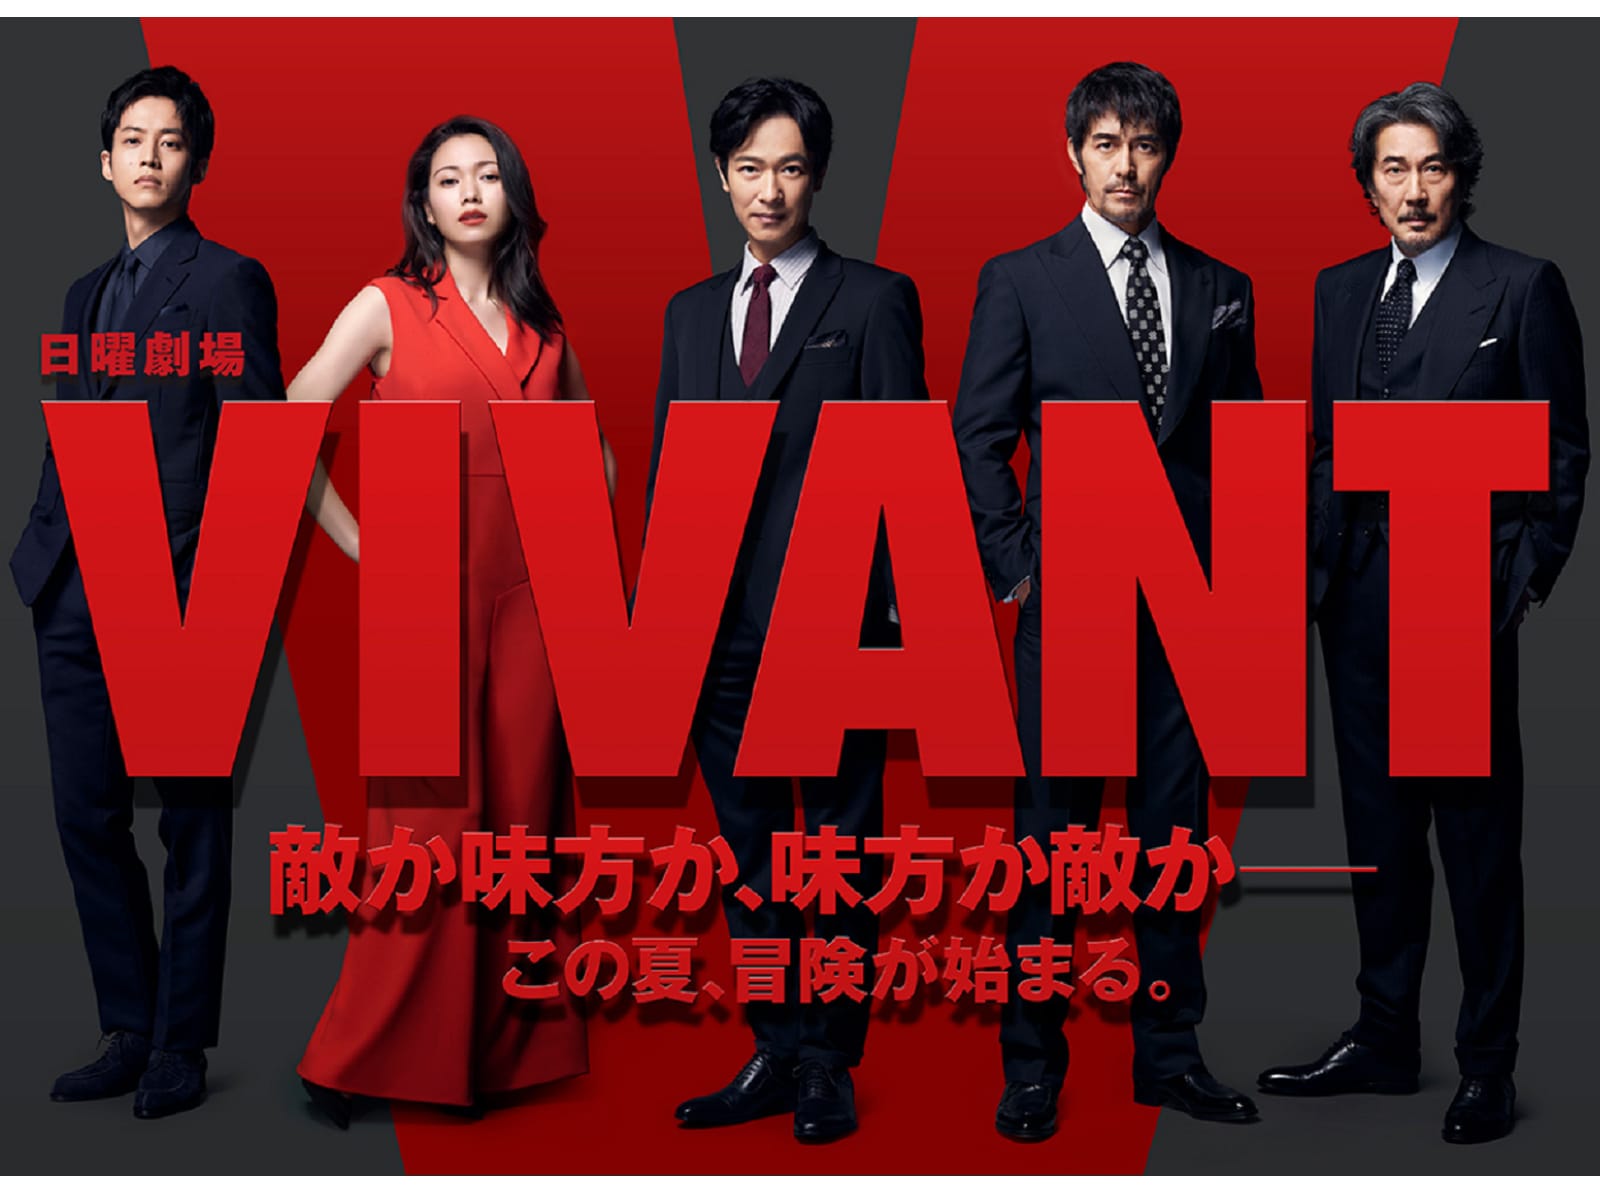 『VIVANT』第1話 大迫力の開幕！ 隠れキャストも明かされファン歓喜「ニノ!?」「日曜劇場アベンジャーズ」の声